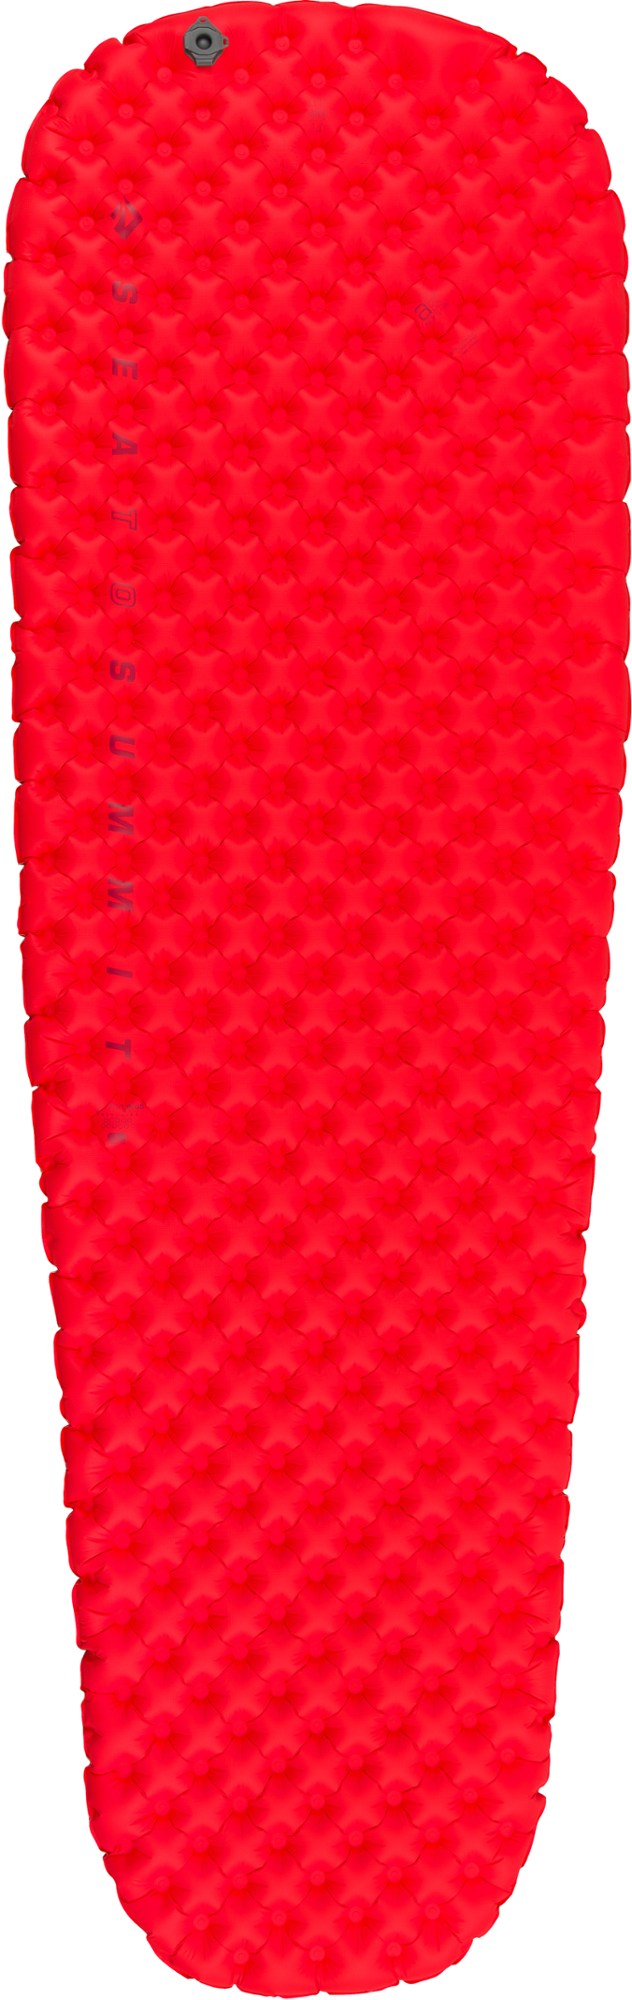 Изолированный воздушный спальный коврик Comfort Plus Sea to Summit, красный